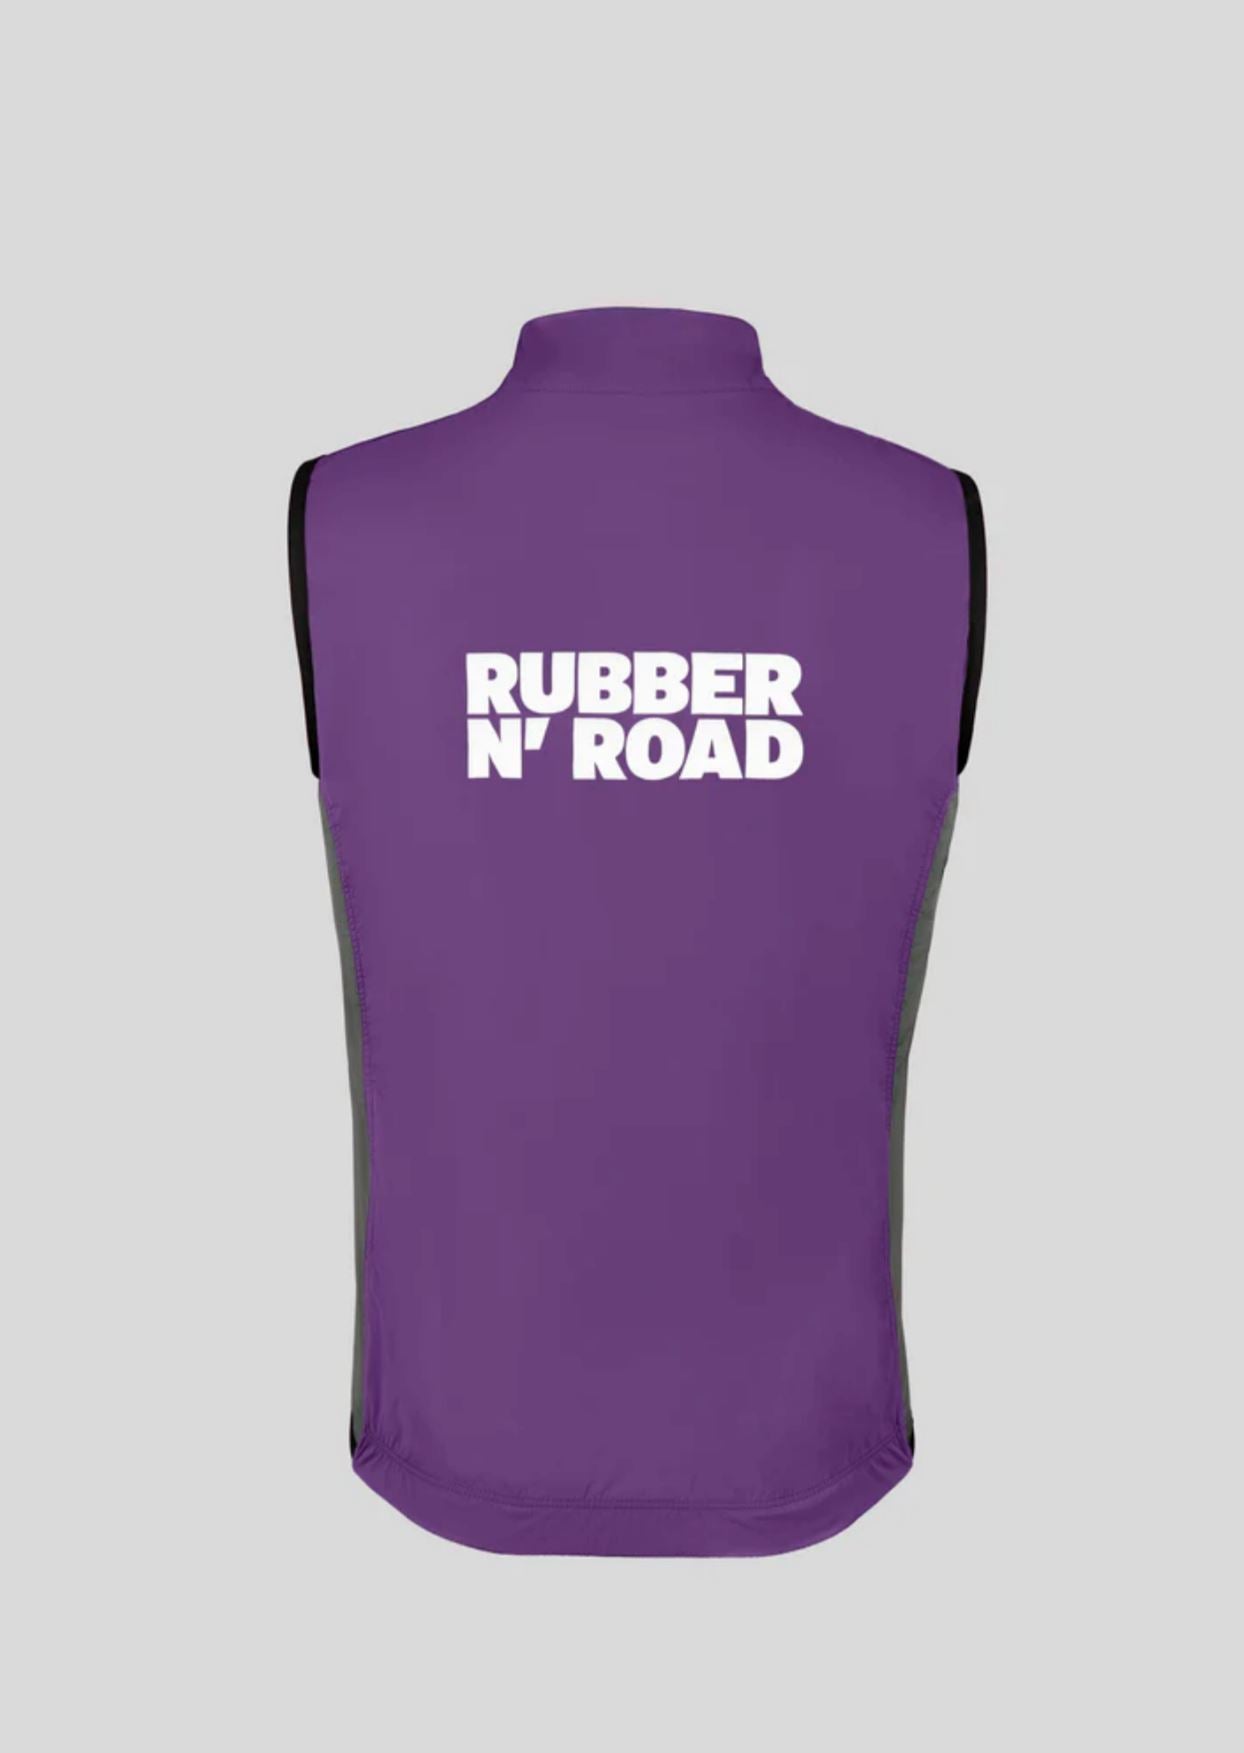 Rubber N' Road - Veste Uniform Vestes Rubber N' Road 